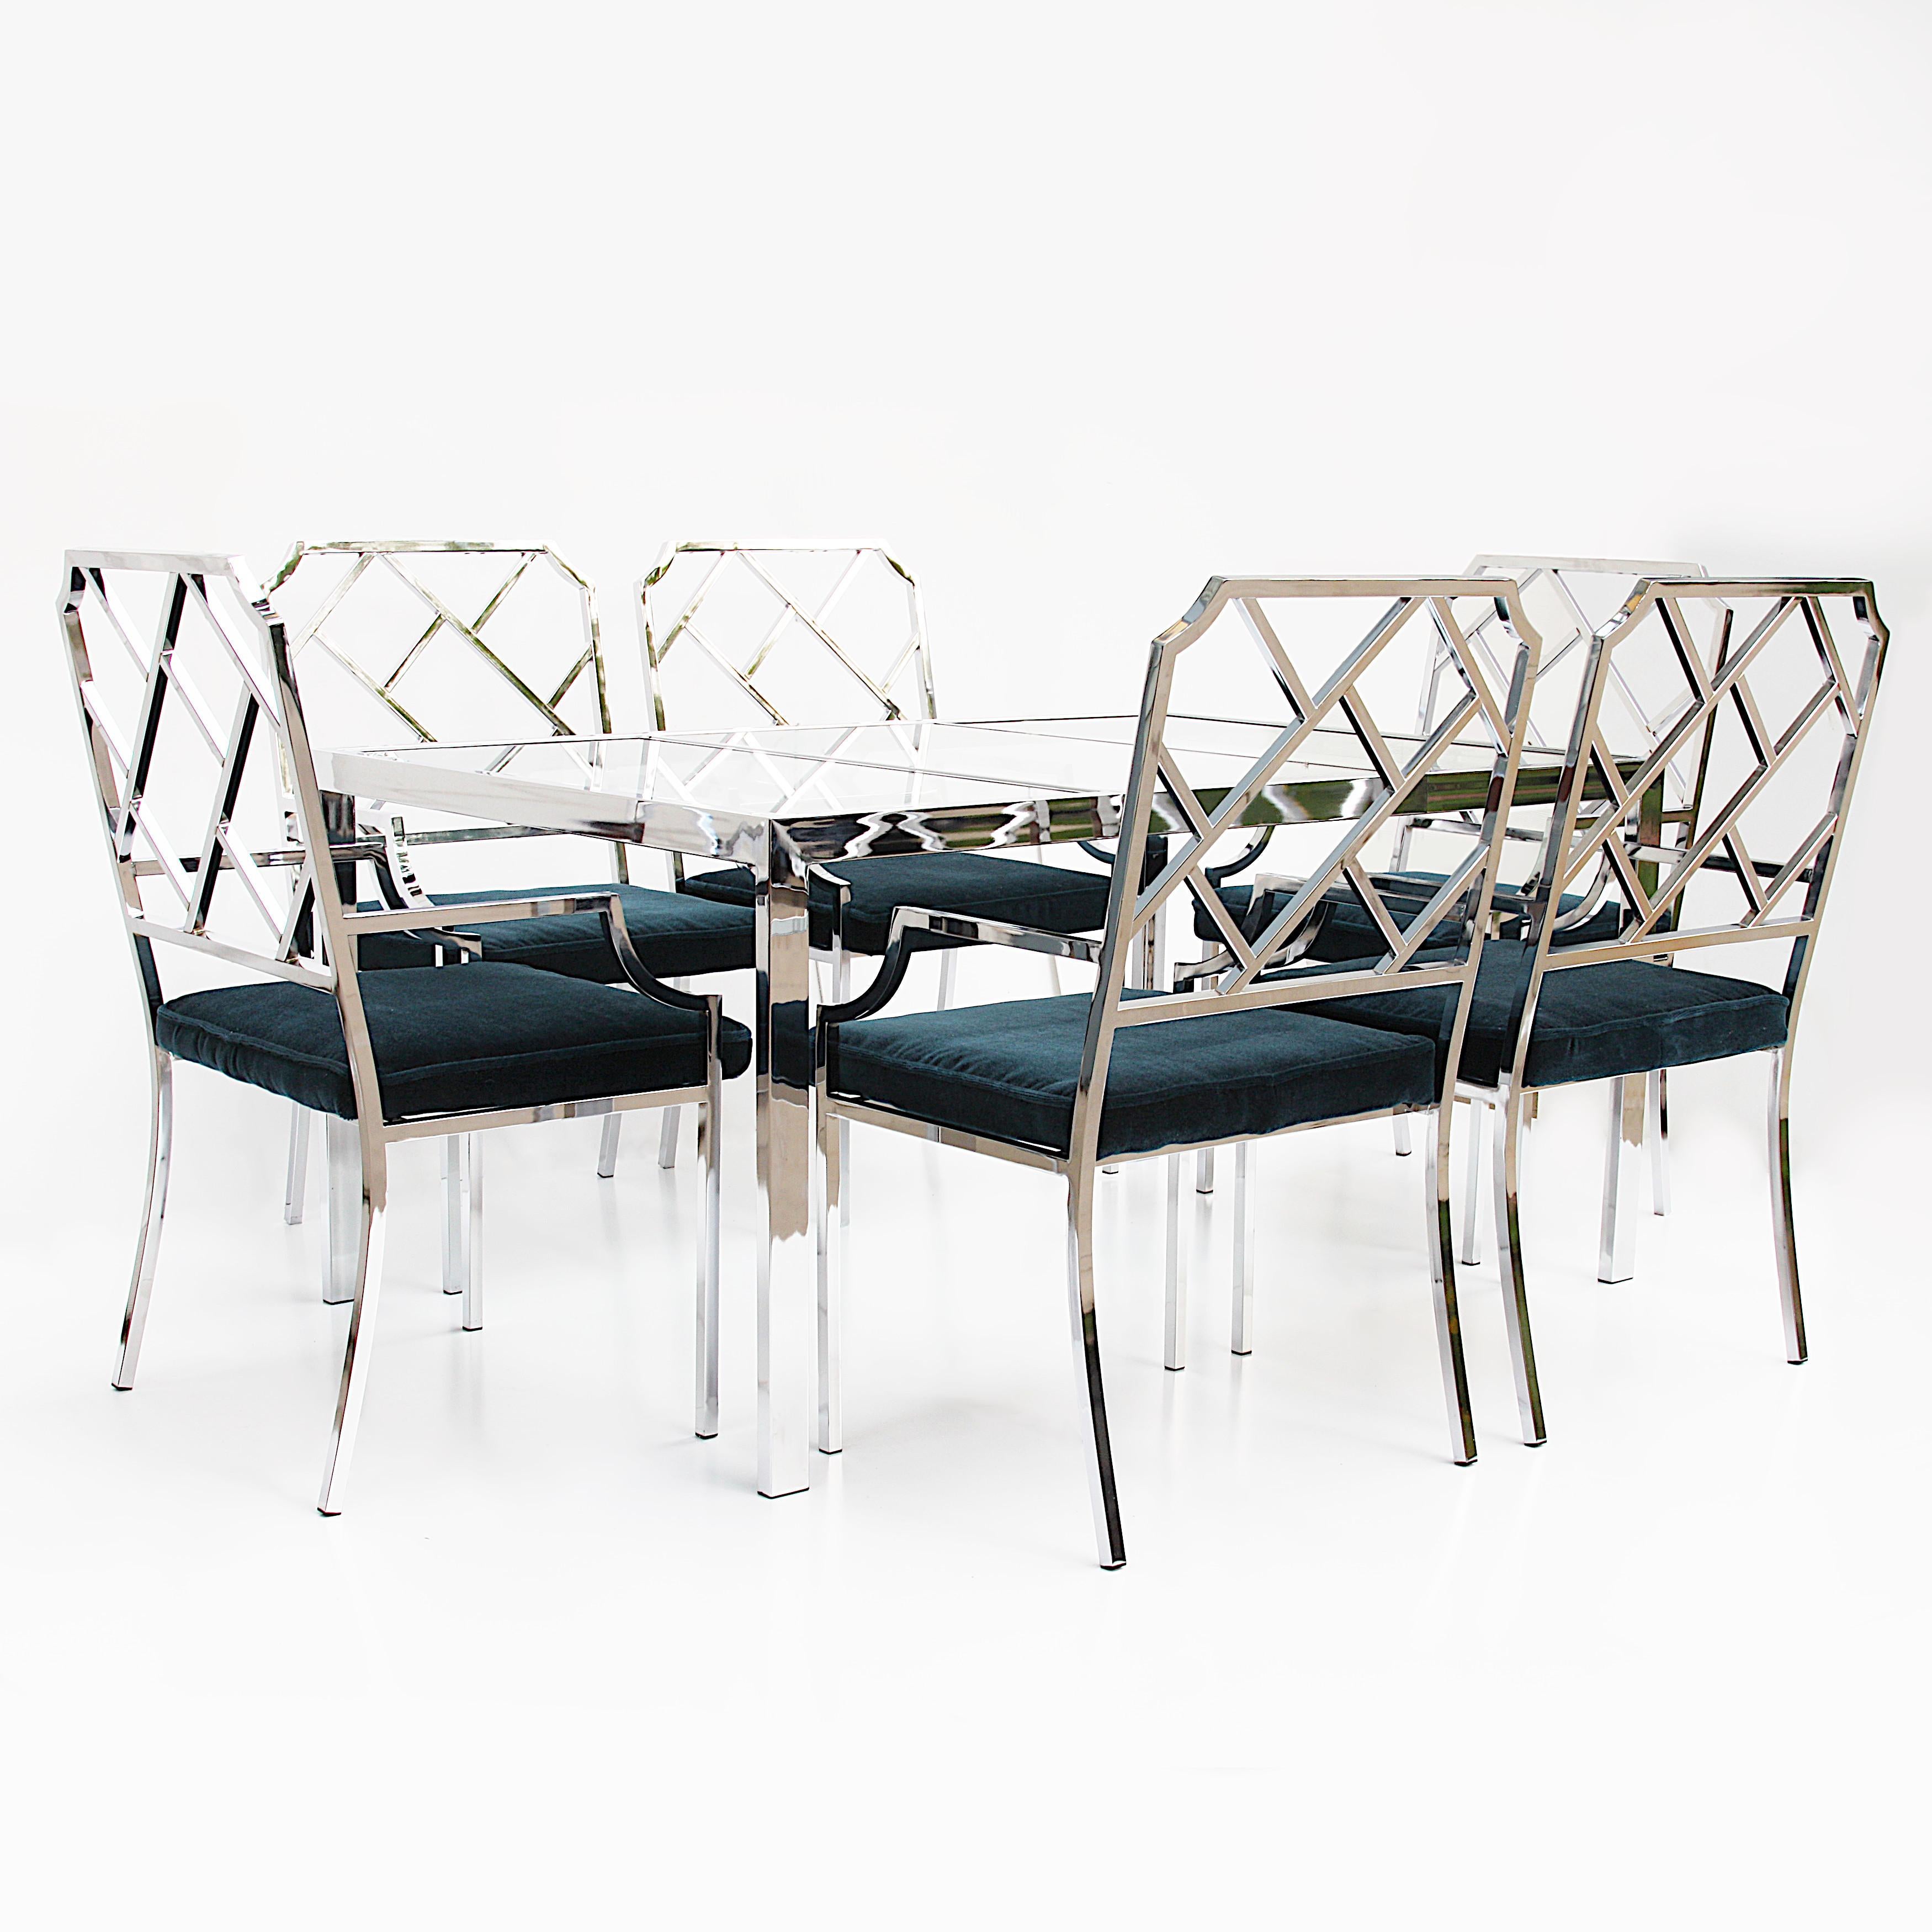 Merveilleux ensemble de 6 chaises chinoises Chippendale et table assortie par Design Institute of America (DIA). L'ensemble comprend six fauteuils chromés assortis au motif moderne et asiatique et une table chromée minimaliste assortie qui permet